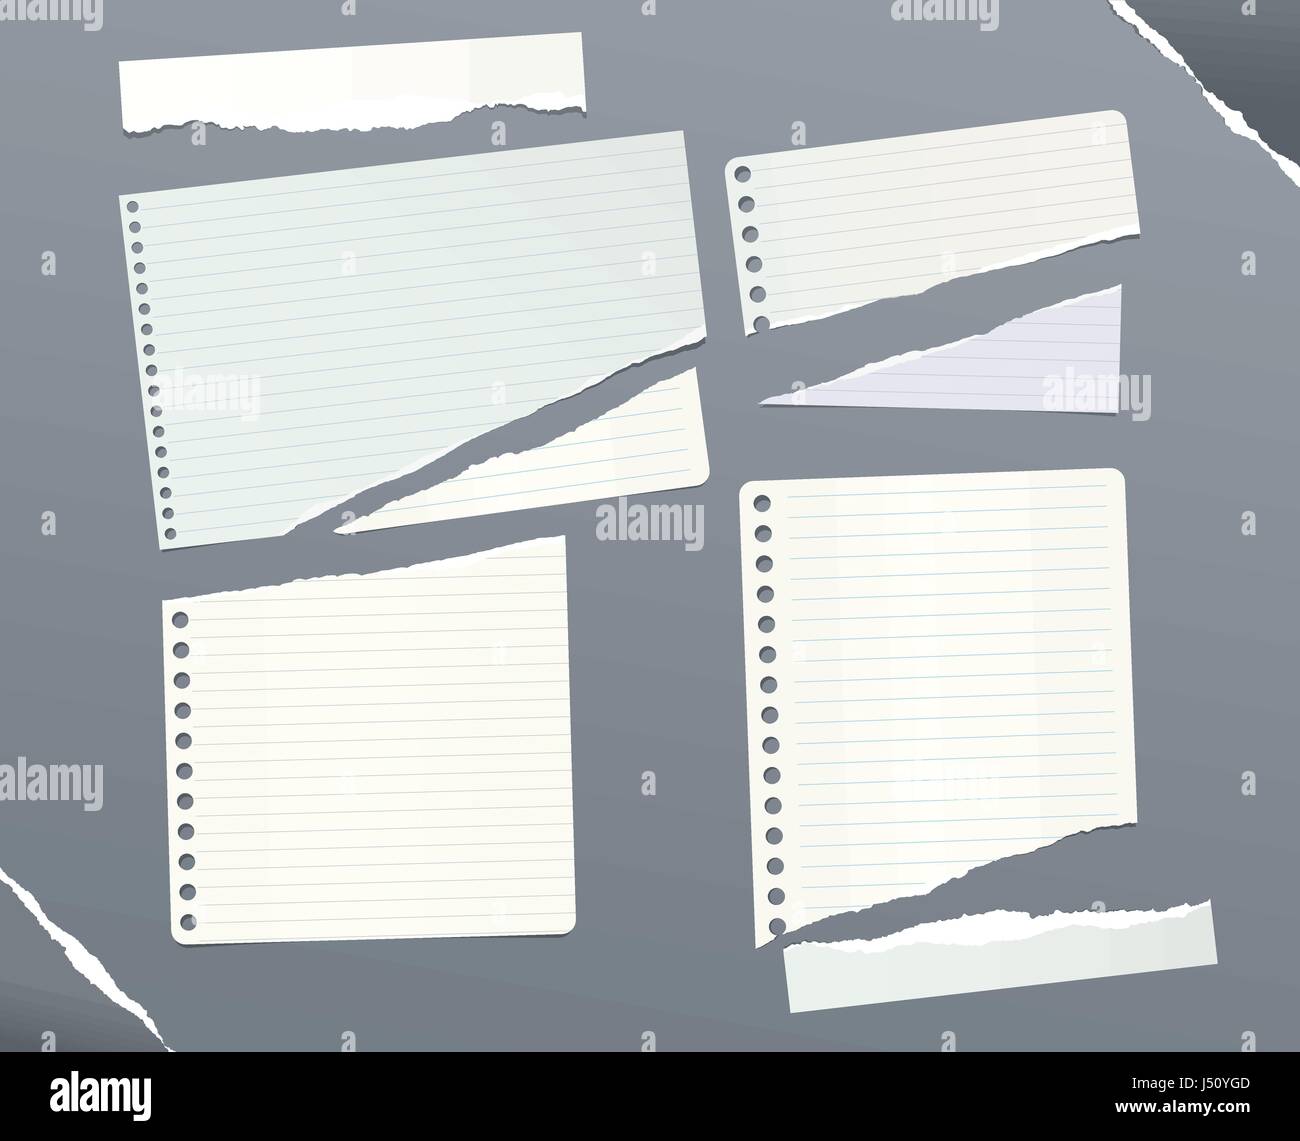 Pezzi di strappato governata, squadrati nota, notebook, copybook fogli di carta bloccati su sfondo grigio. Illustrazione Vettoriale